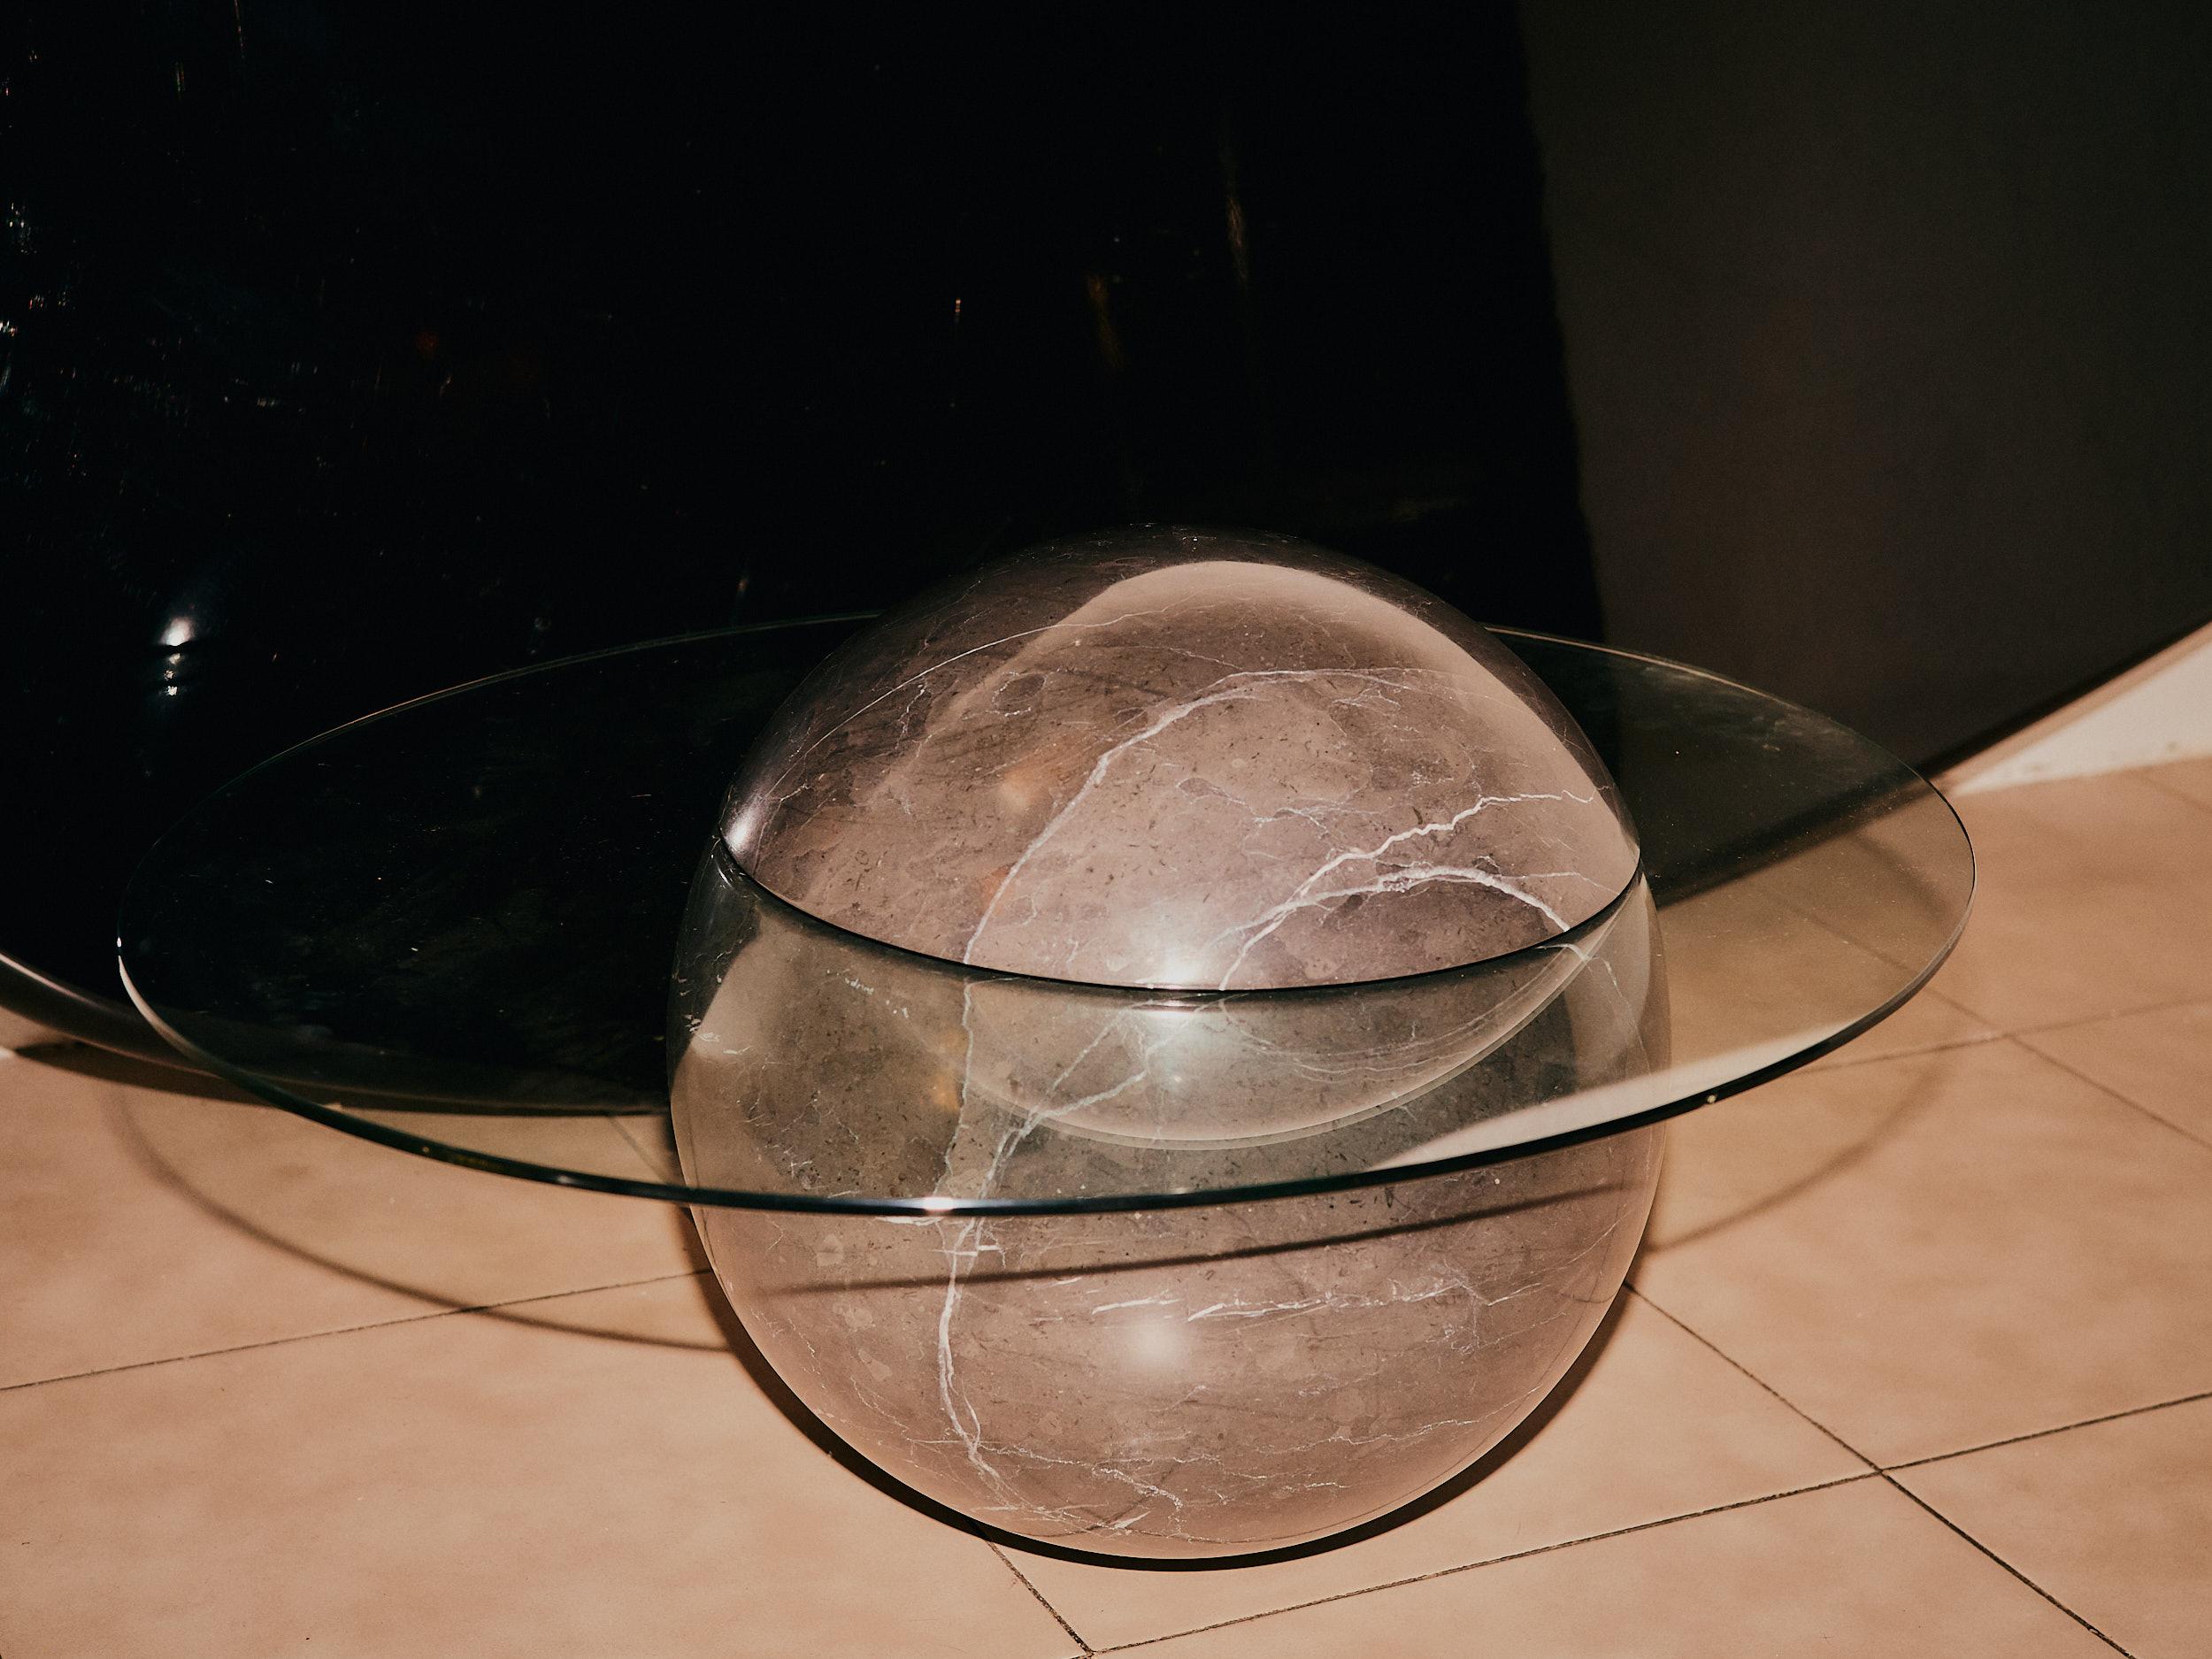 La table d'appoint sculpturale Mini Uovo présente une fantaisie rétro-futuriste. Se présentant comme une vision passée de l'avenir, Uovo construit sur des histoires mystérieuses de technologies spéculatives et de soucoupes volantes ; ses formes